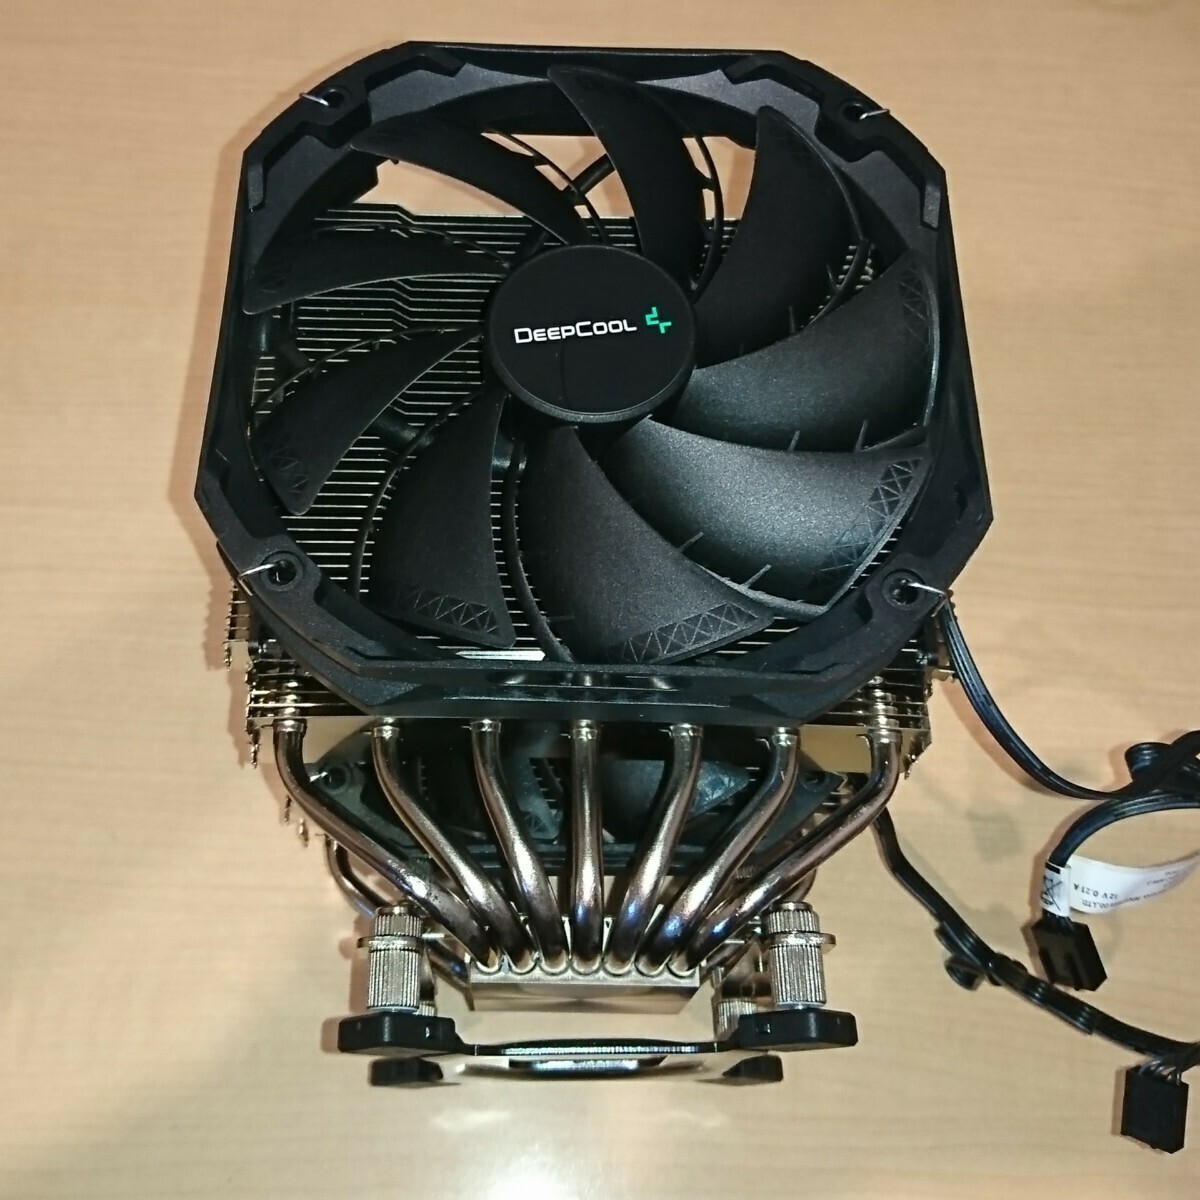 DeepCool ASSASIN III CPU cooler,air conditioner (O4191A)